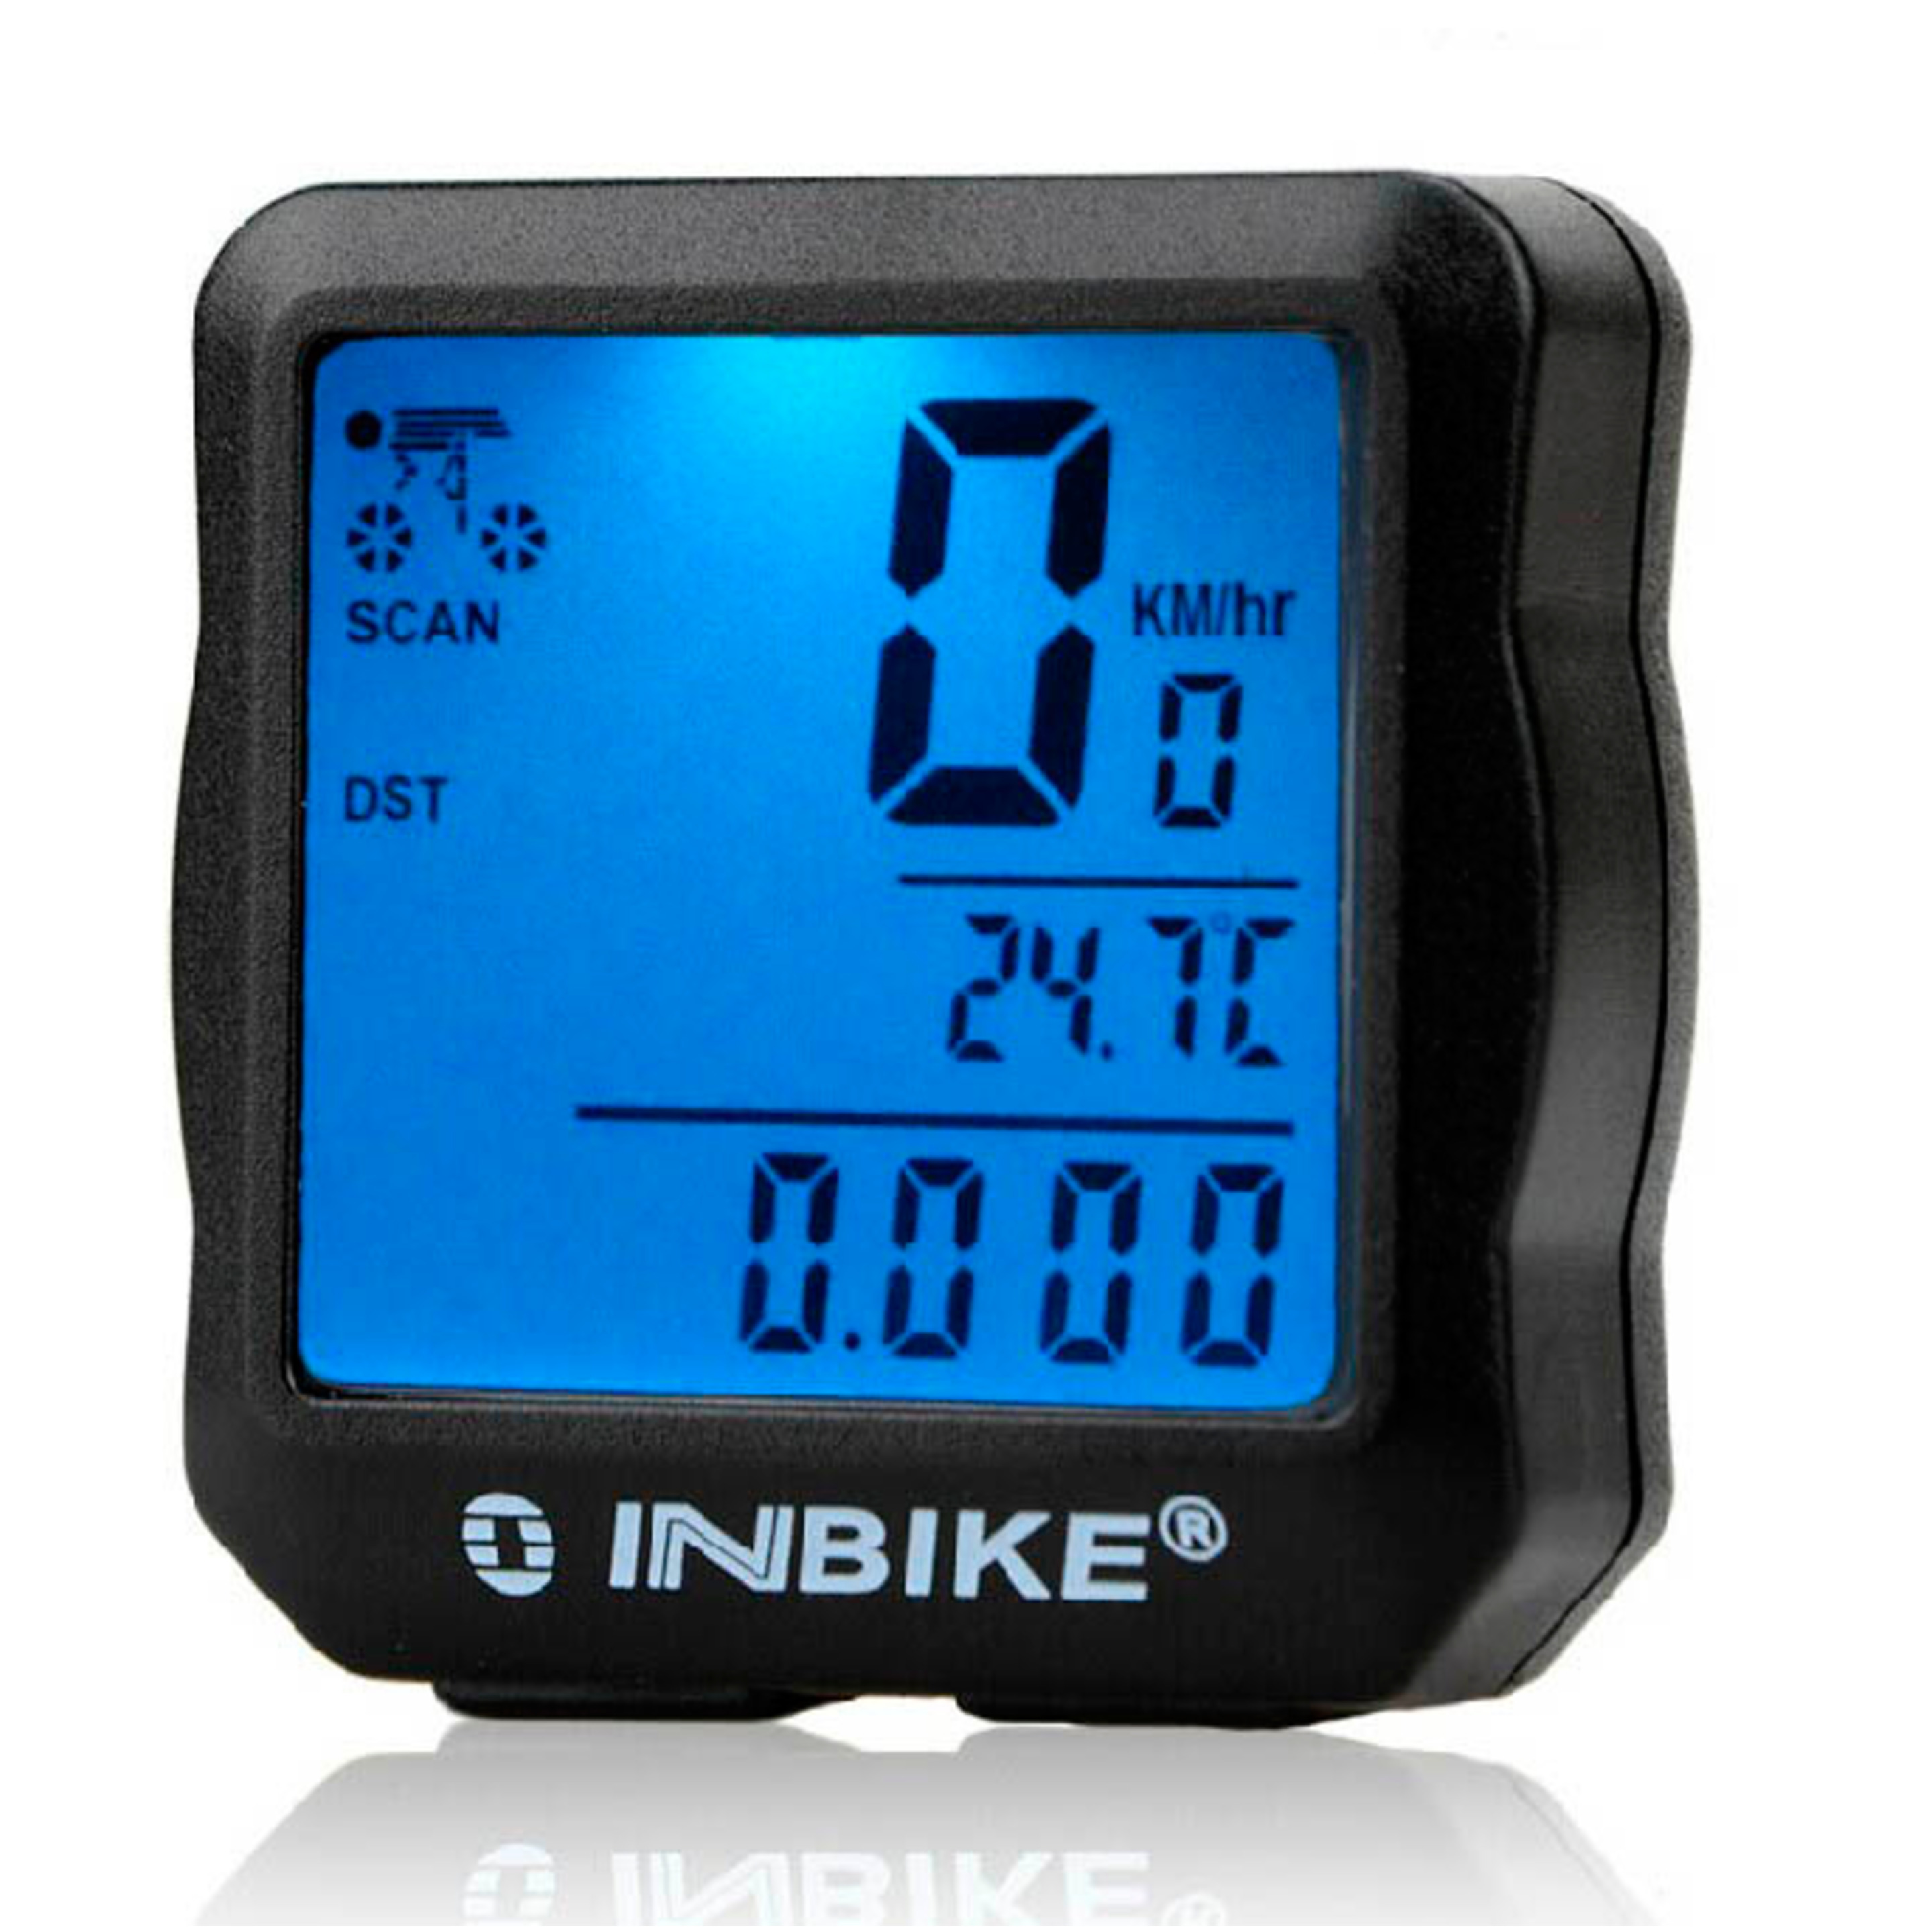 Cuentakilómetros Digital Multifunción Bicicleta Inbike Ic528 - negro - 